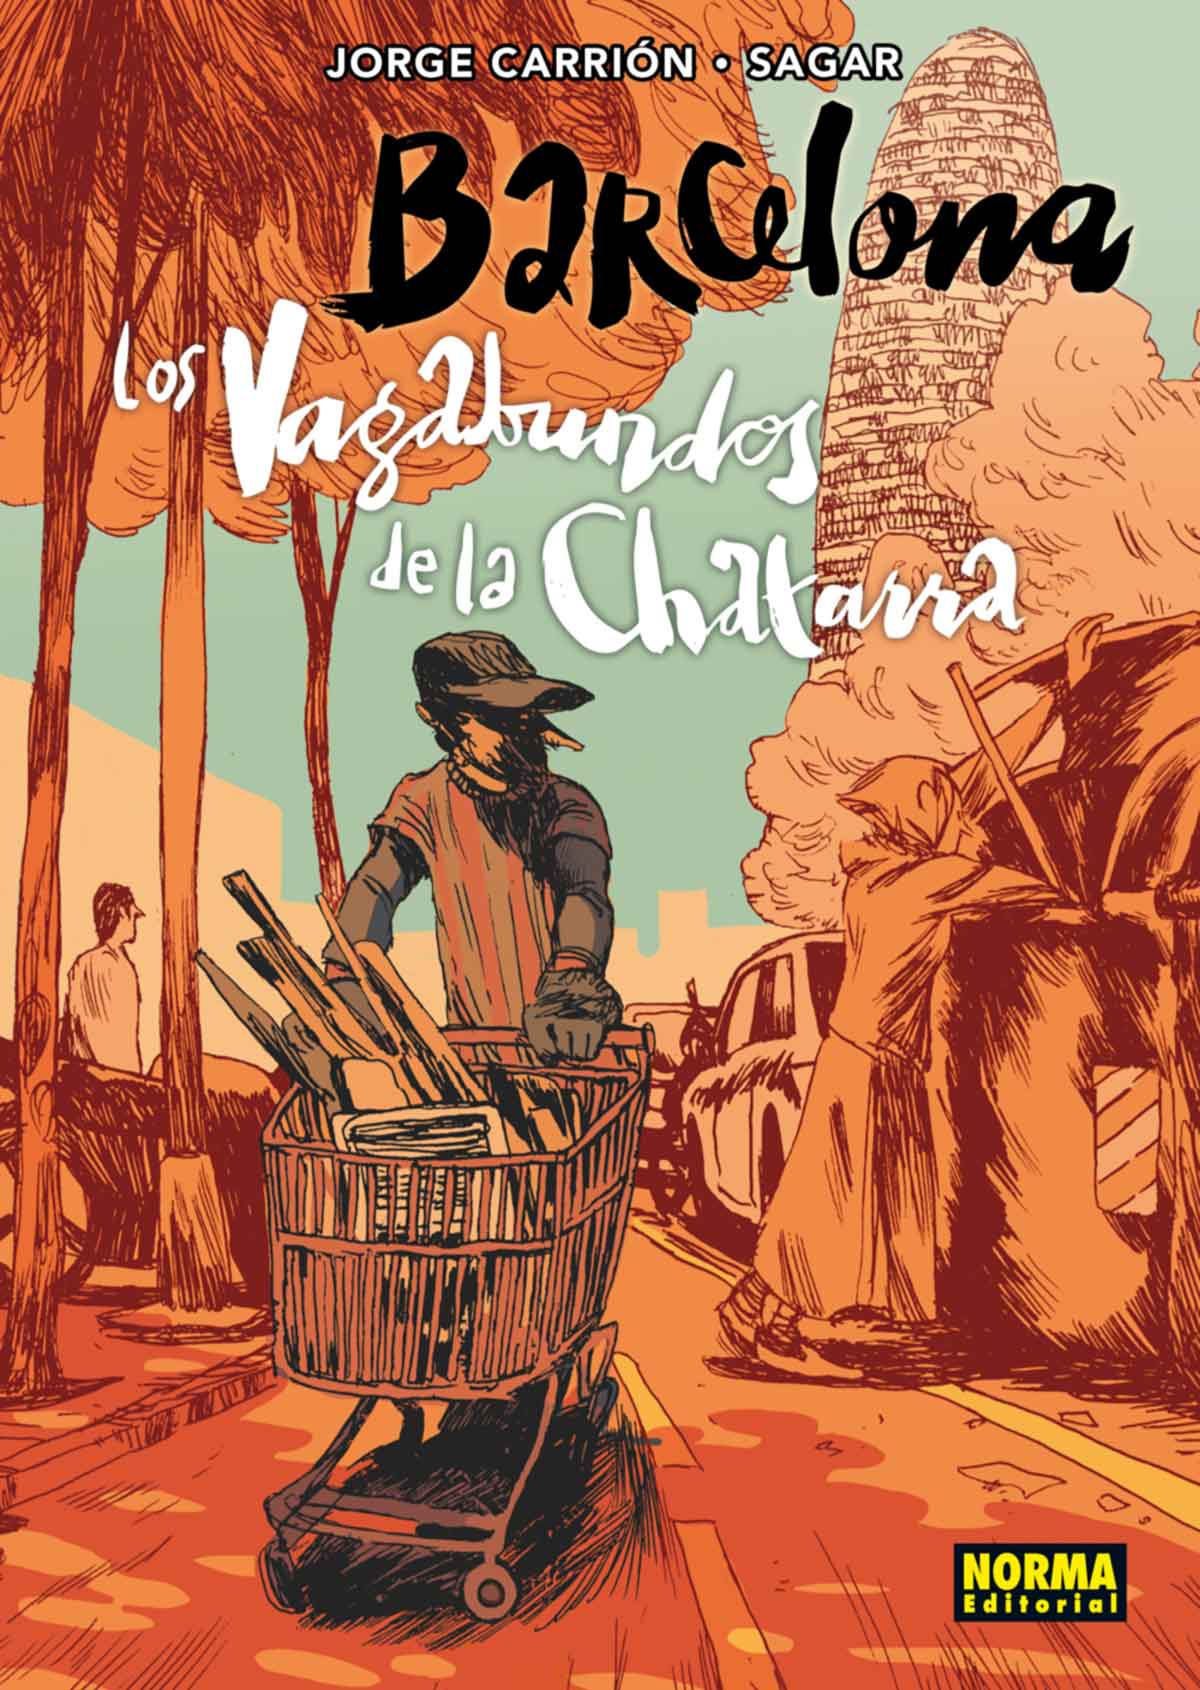 Tapa de Barcelona: los vagabundos de la chatarra, libro de Jorge Carrión y Sagar